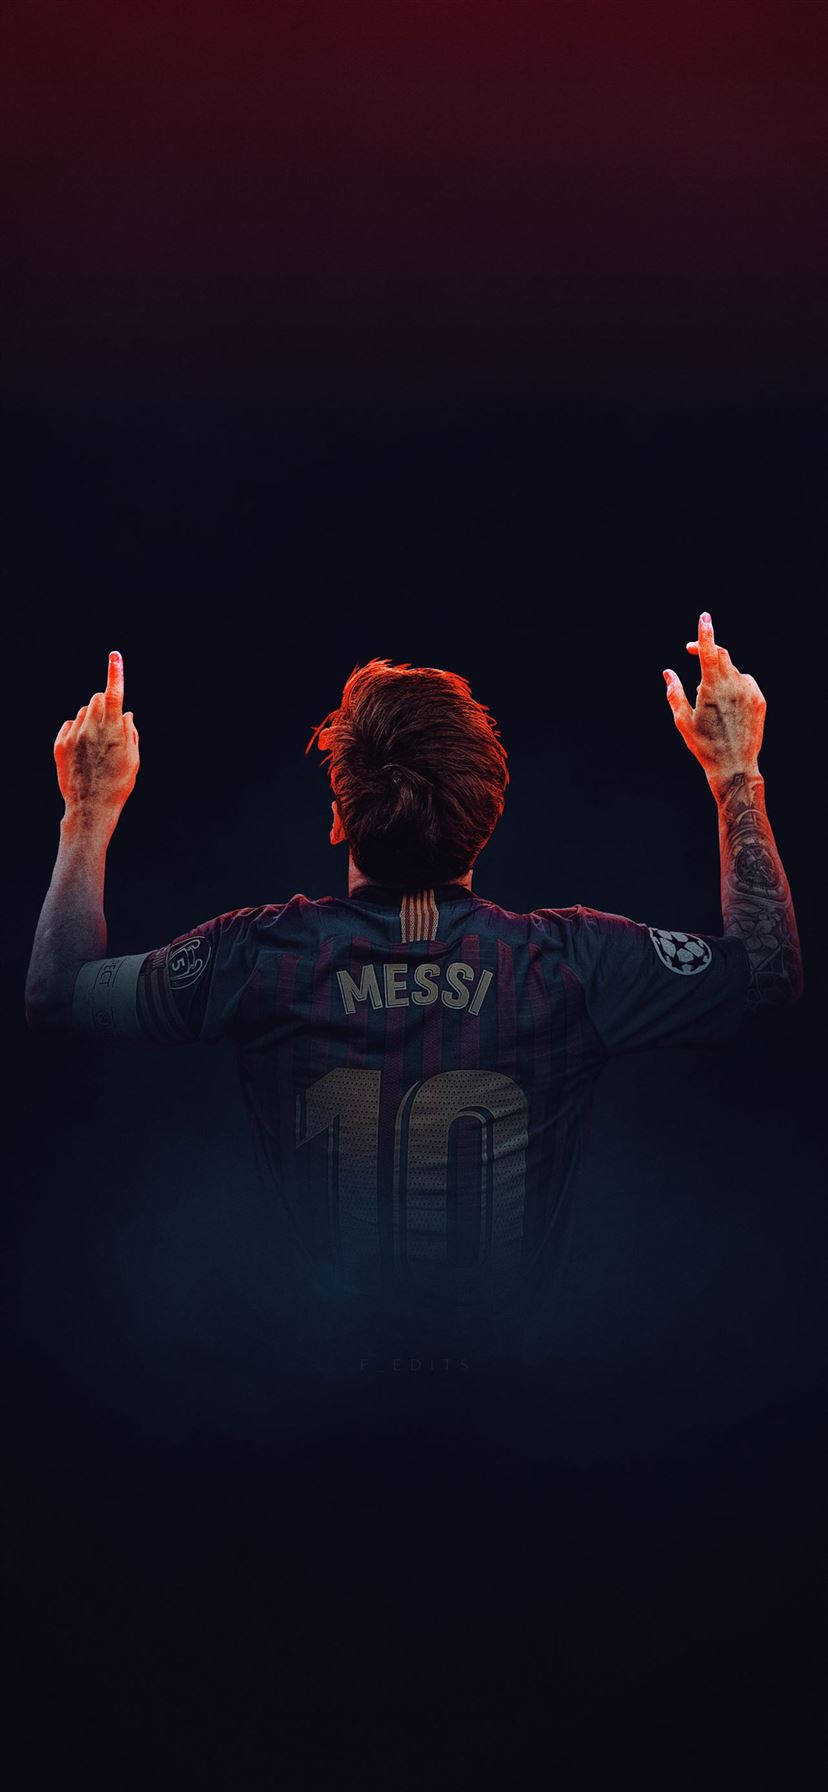 Wallpaperargentinsk Professionell Fotbollsspelare Lionel Messi Sportar Iphone Bakgrundsbild. Wallpaper